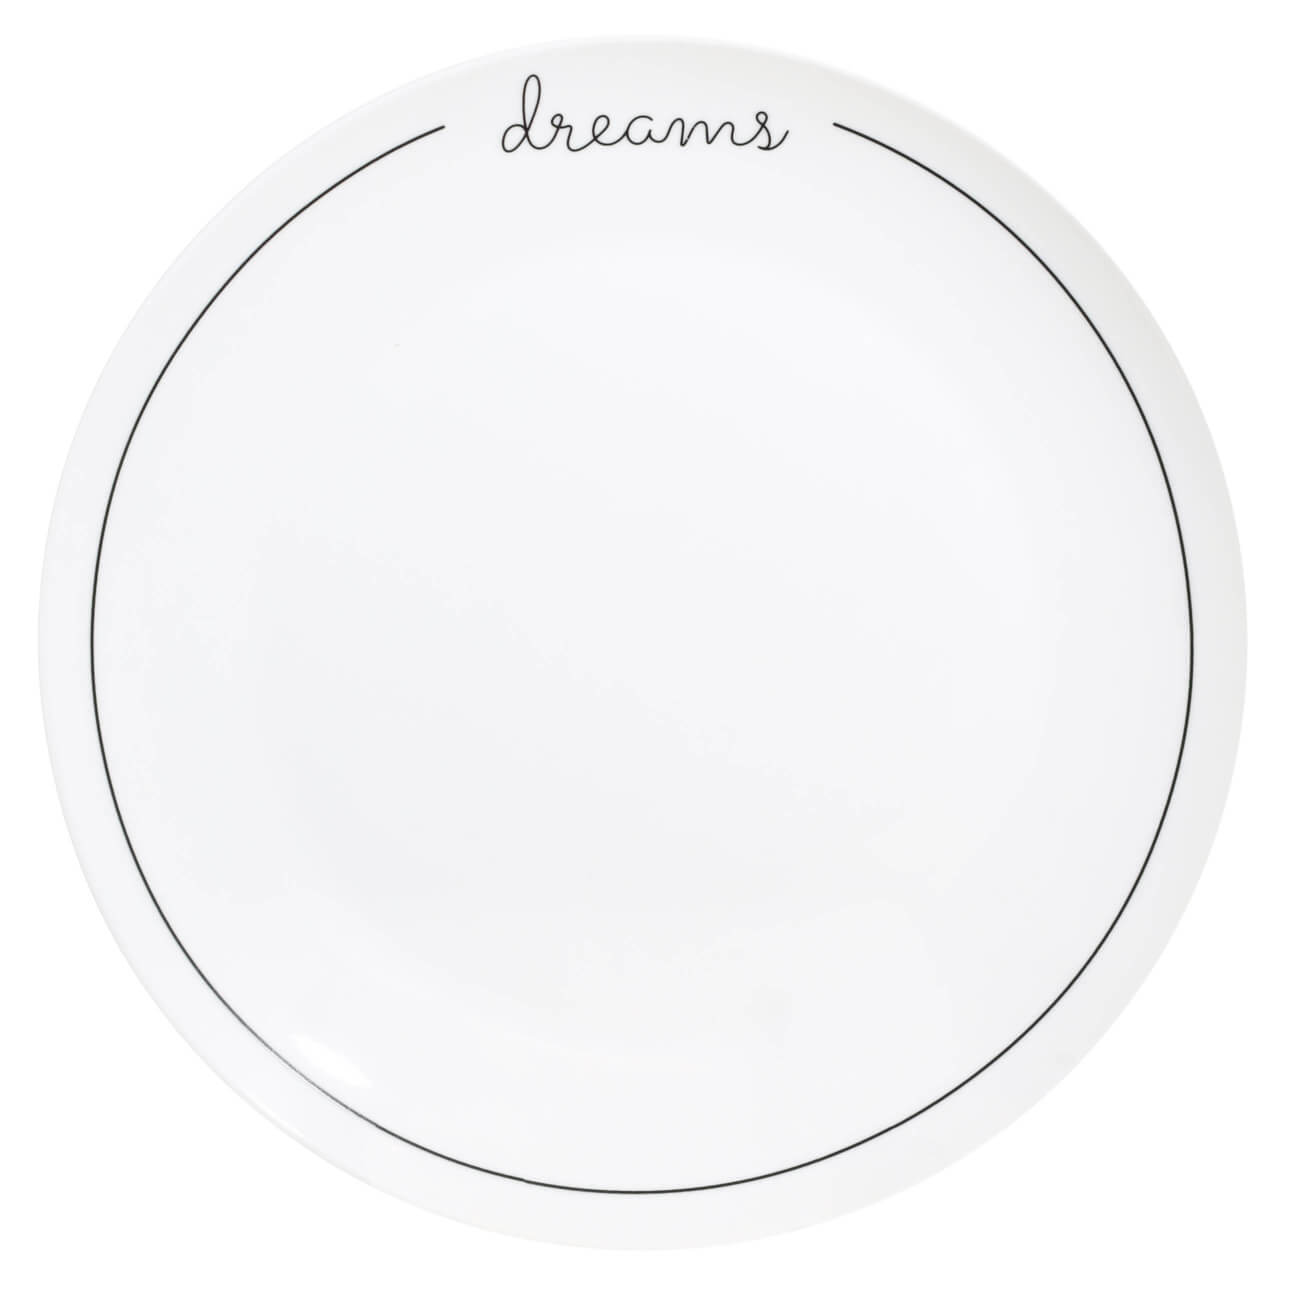 Тарелка обеденная, 27 см, фарфор N, белая, Dreams, Scroll white тарелка обеденная home and style comet 28 см терракота